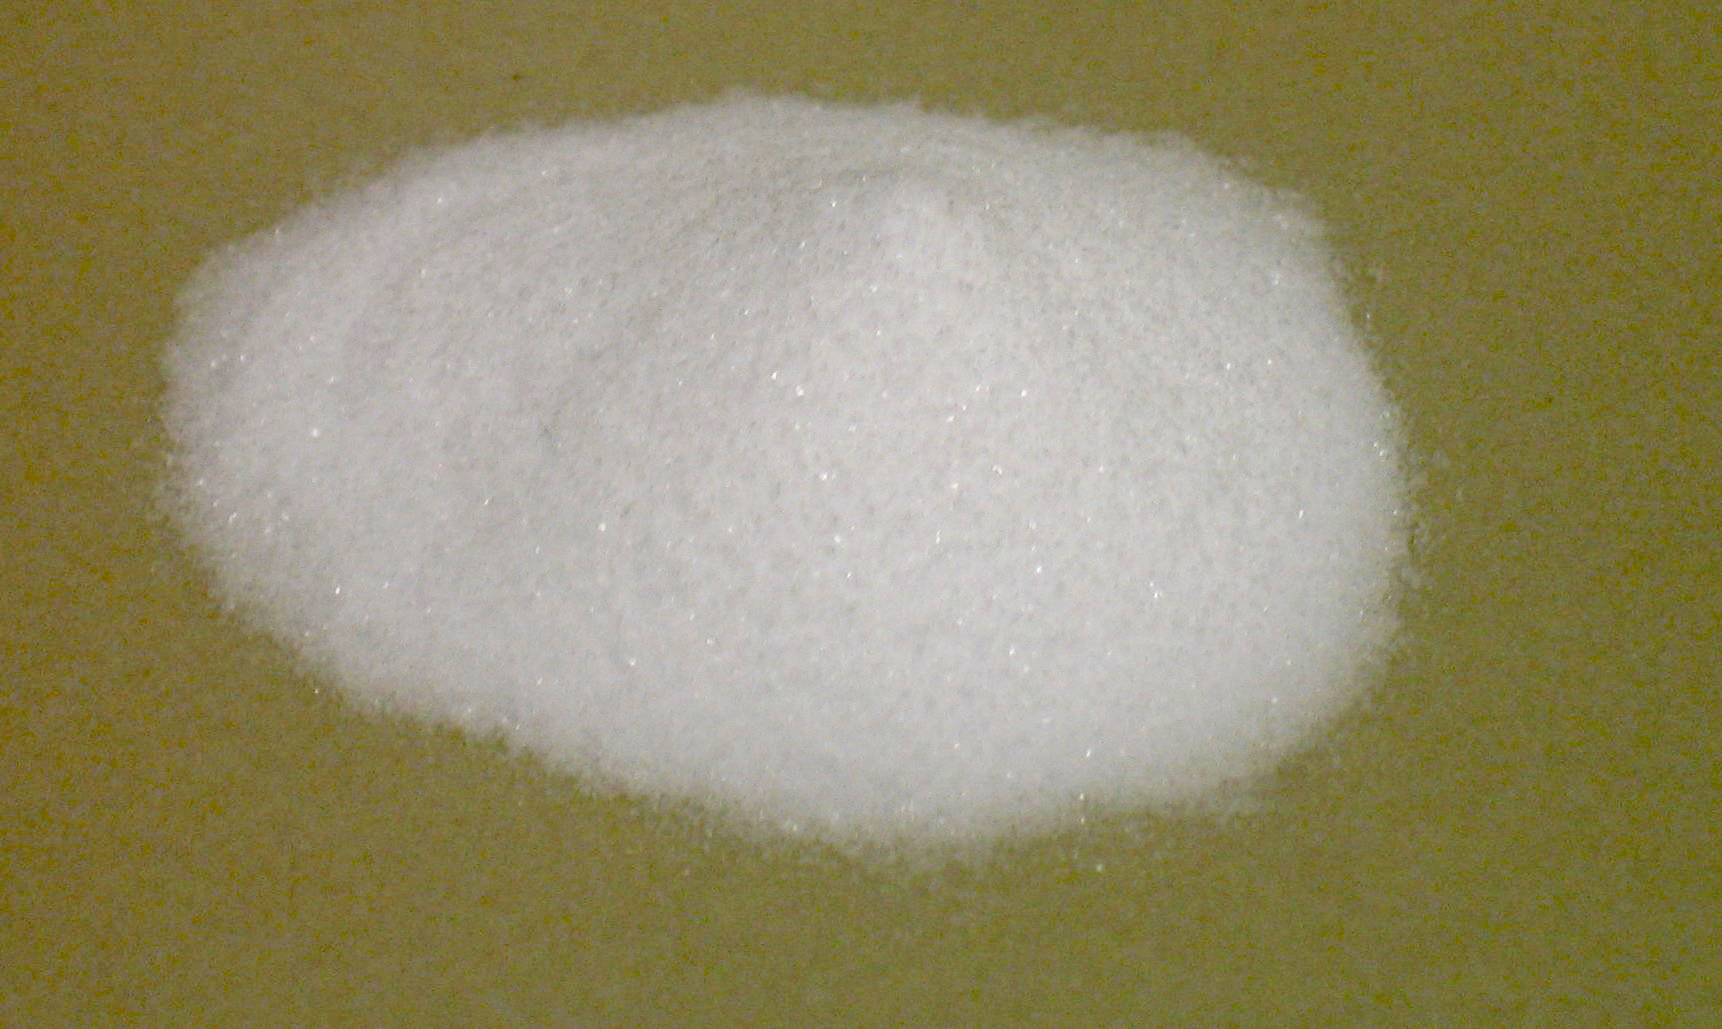 bikarbonat som vitt pulver